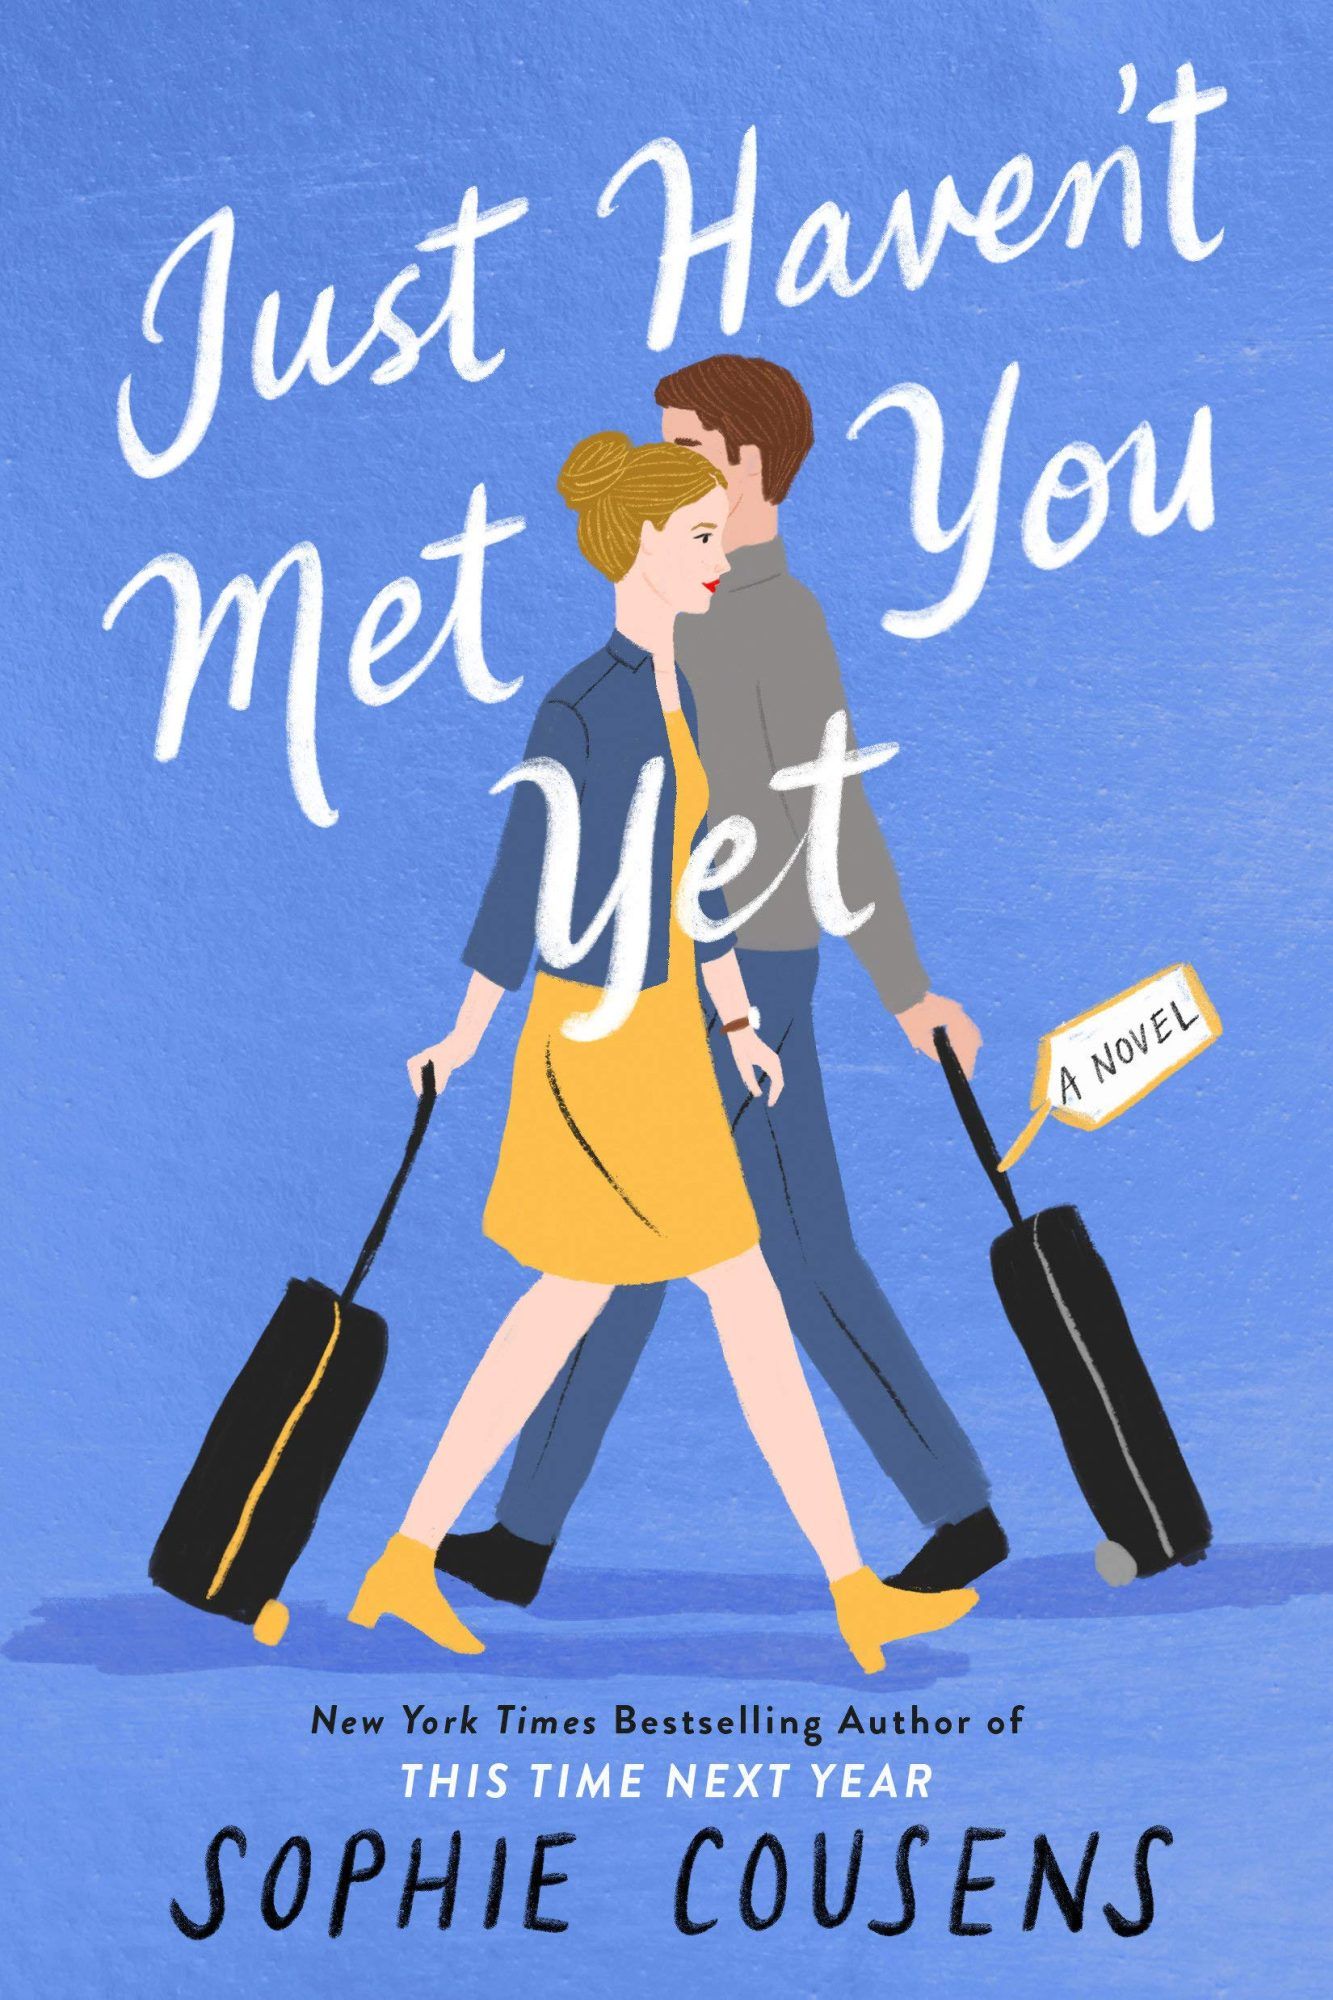 Εξώφυλλο βιβλίου του Just Haven’t Met You Yet από τη Sophie Cousens